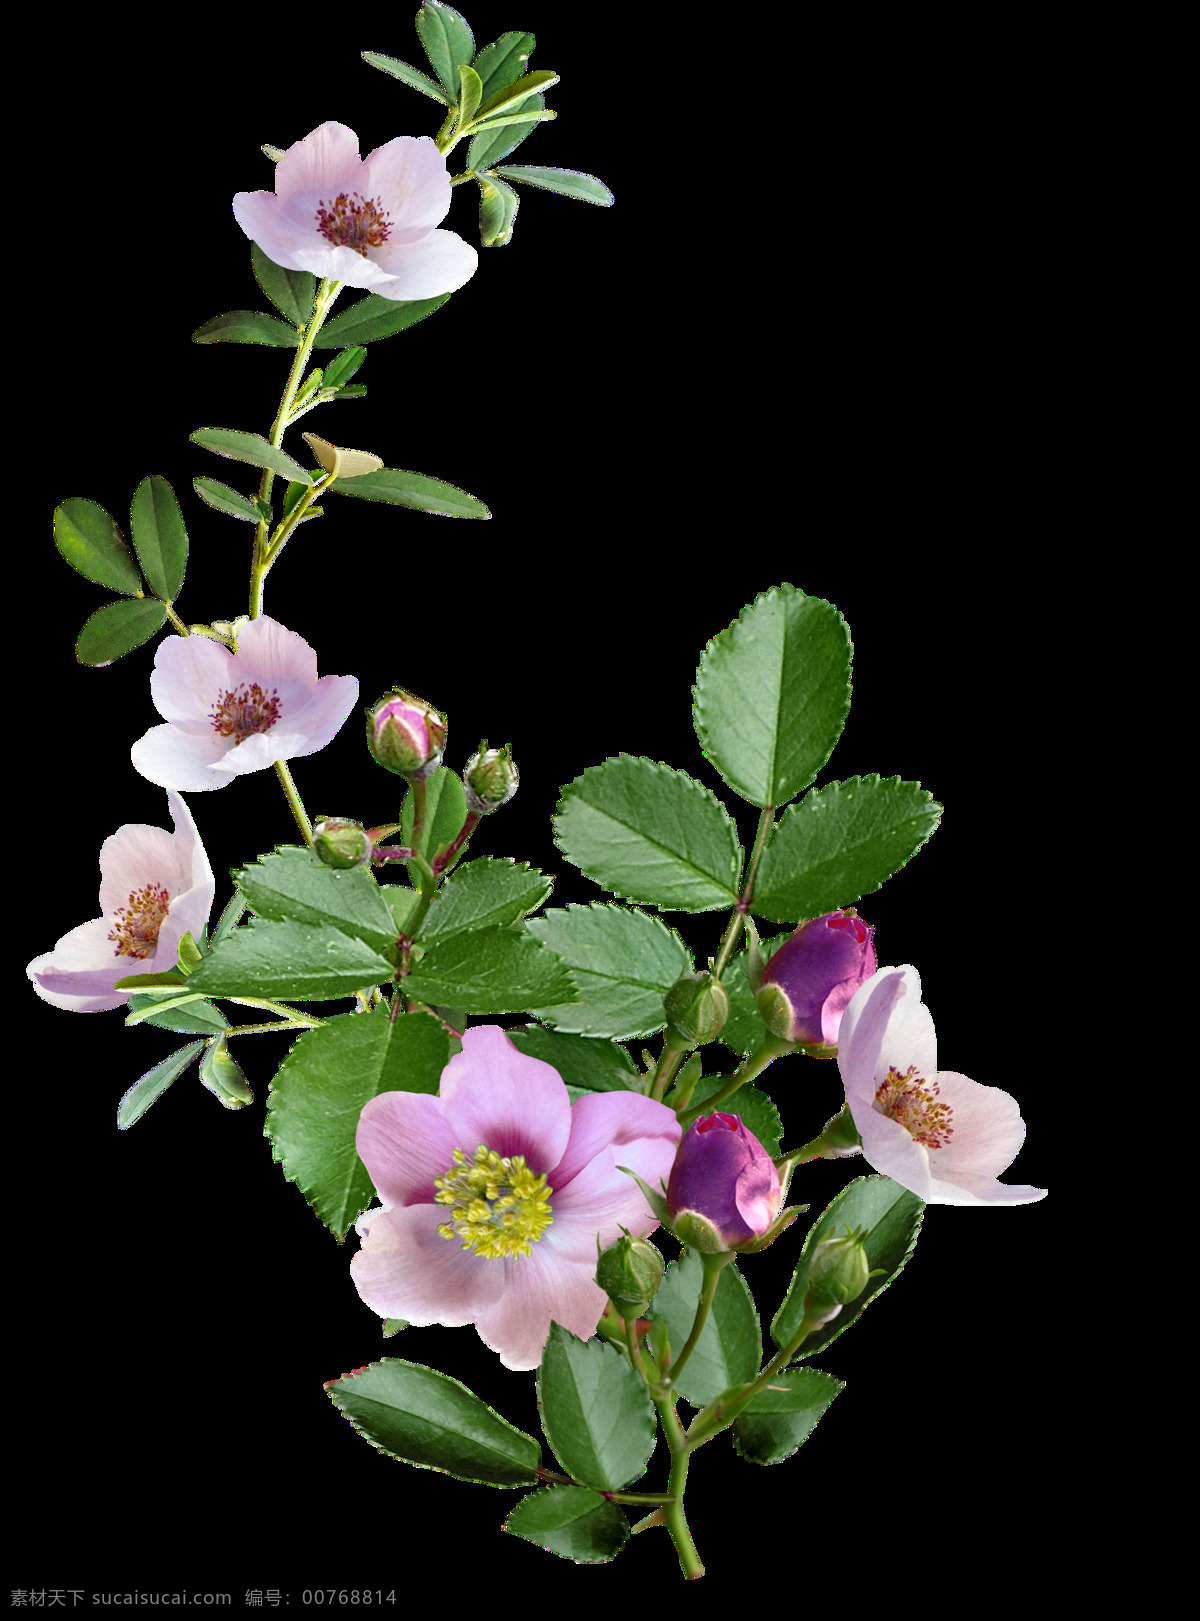 生机勃勃 植物 鲜花 透明 紫色 绿叶 花枝 花蕊 透明素材 免扣素材 装饰图片